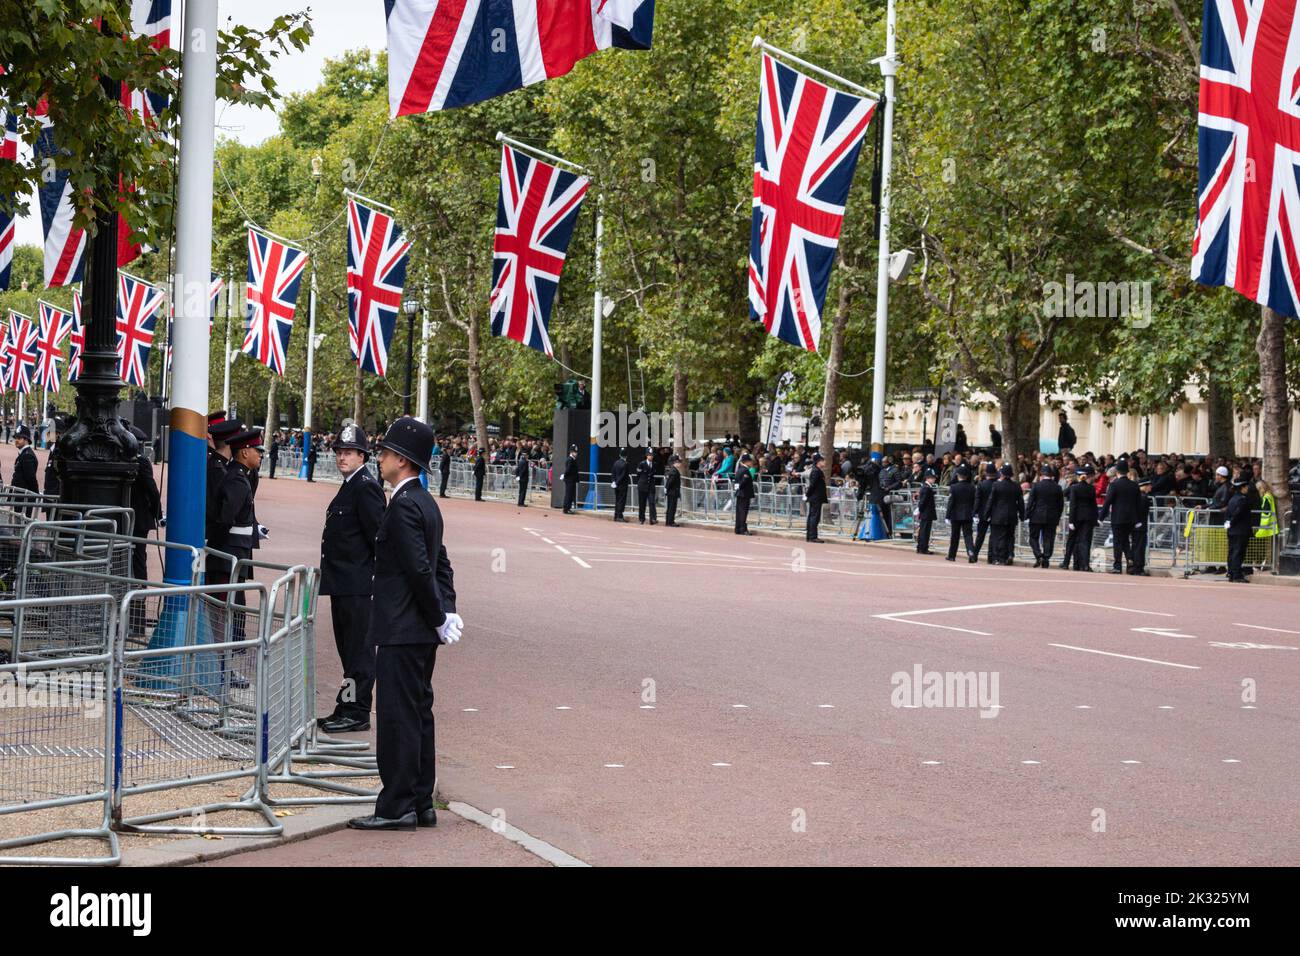 Des policiers se sont alignés sur le Mall pour le cortège funéraire de la reine Elizabeth II à Londres à la suite du décès de la reine, Angleterre, Royaume-Uni Banque D'Images